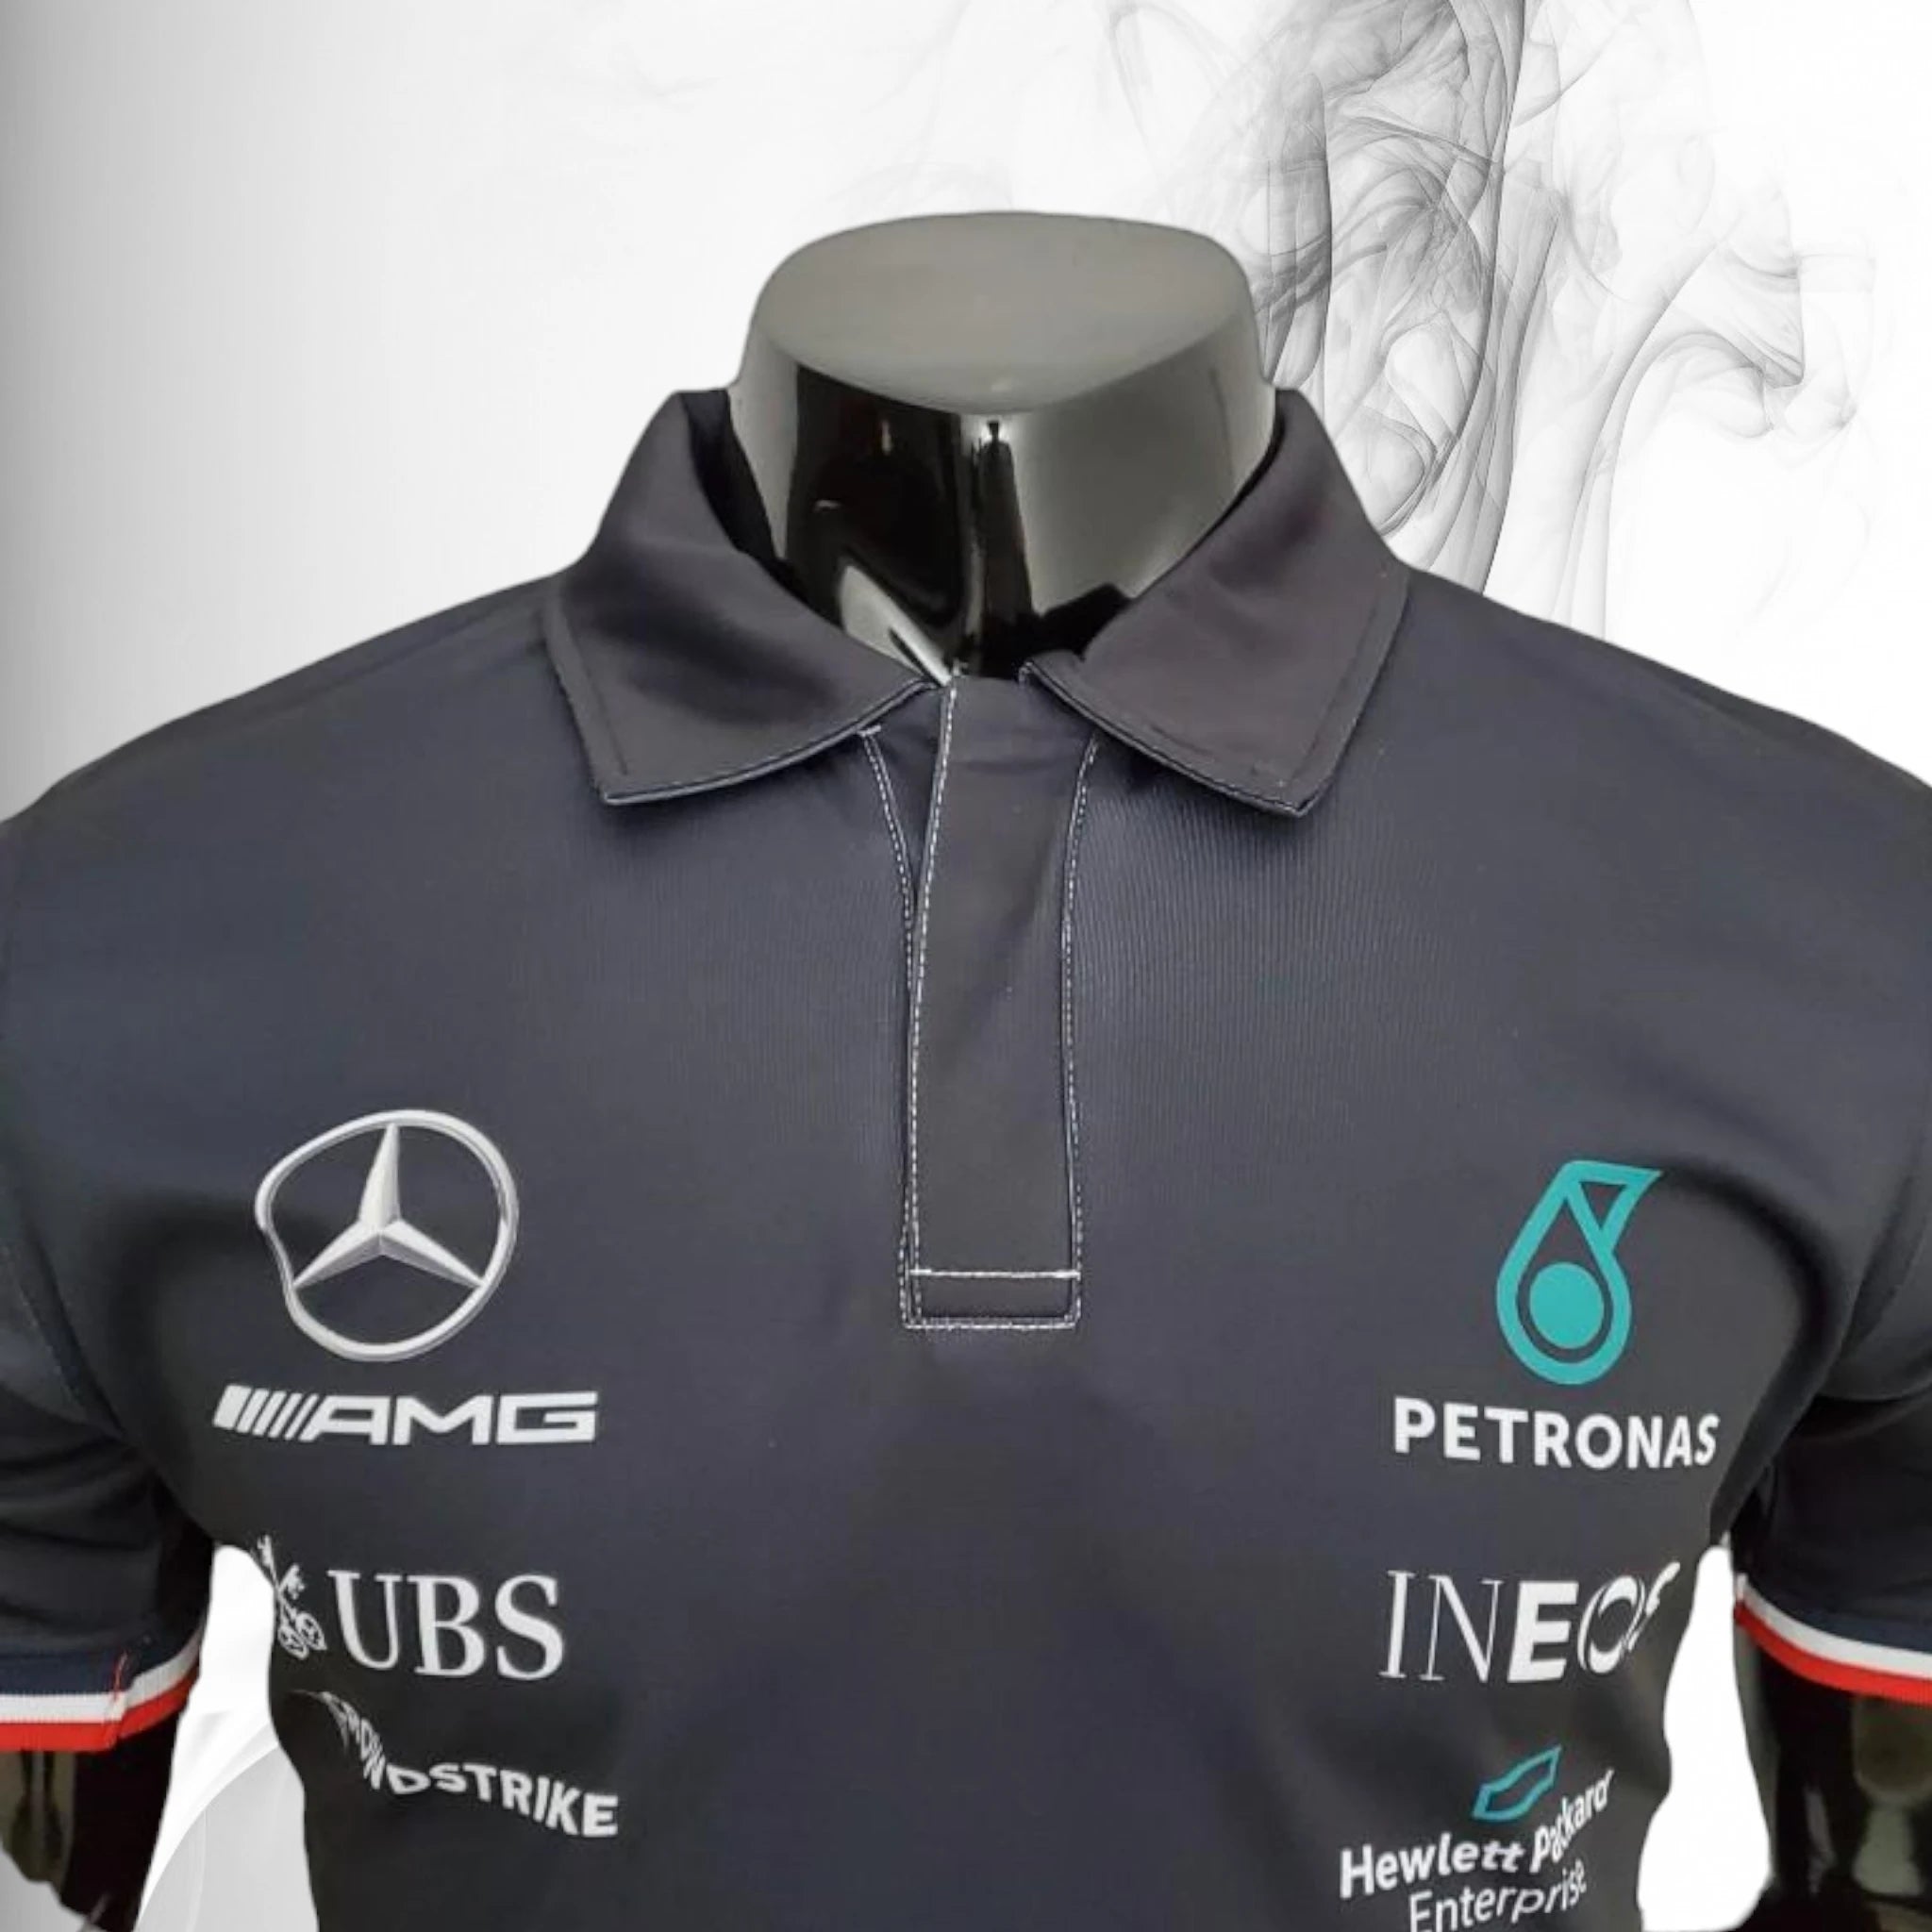 2022 Mercedes Lewis Hamilton F1 Polo Shirt